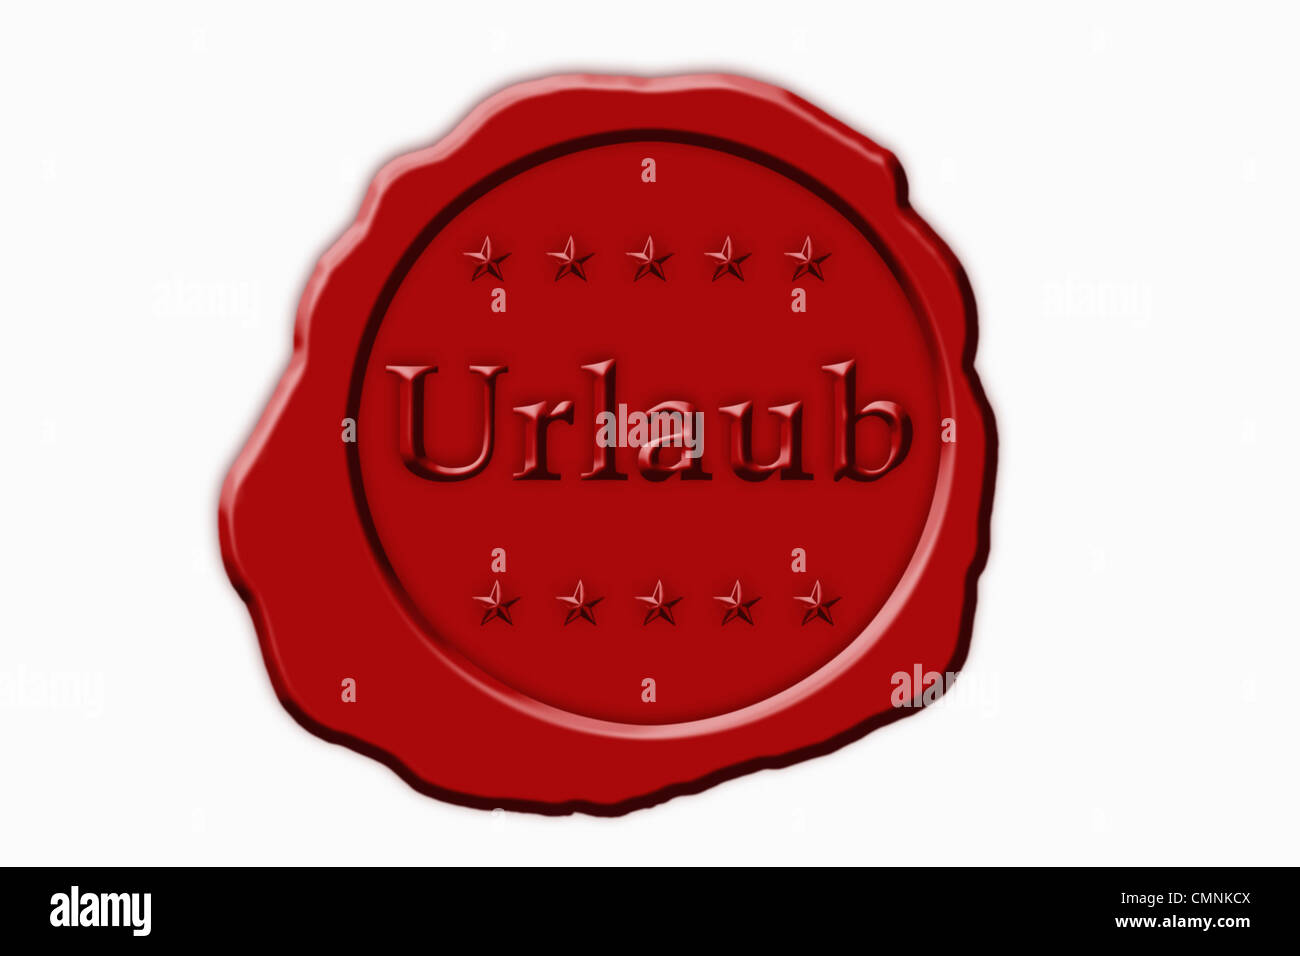 Detailansicht von roten Siegels mit der Aufschrift Urlaub | photo détail d'un sceau rouge avec l'inscription allemand maison de vacances Banque D'Images